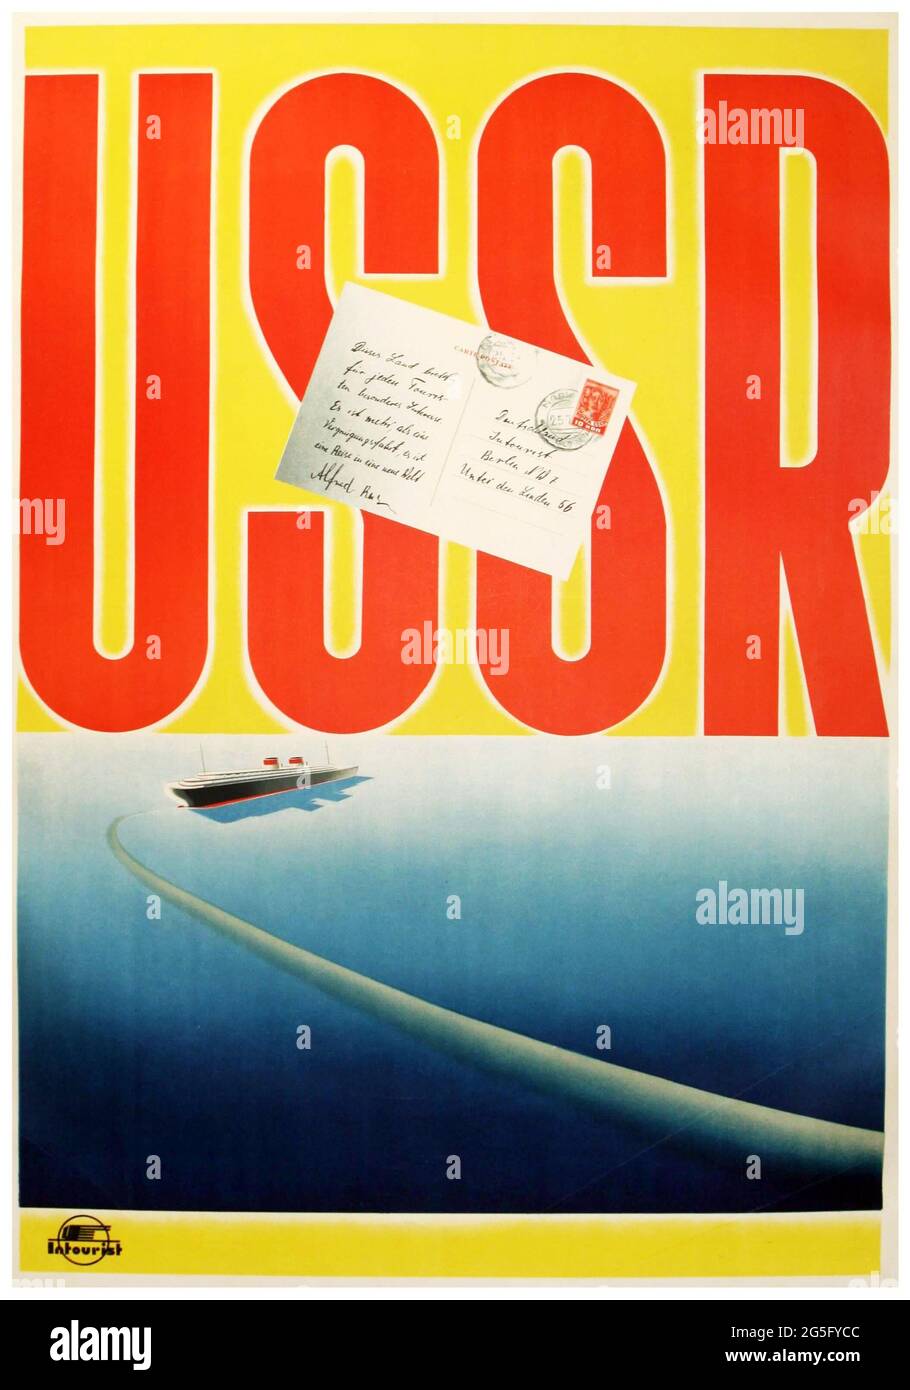 Affiche de publicité de voyage de l'ancien Soviet Intourist par N. Zhukov URSS – affiche de voyage 1936 Banque D'Images